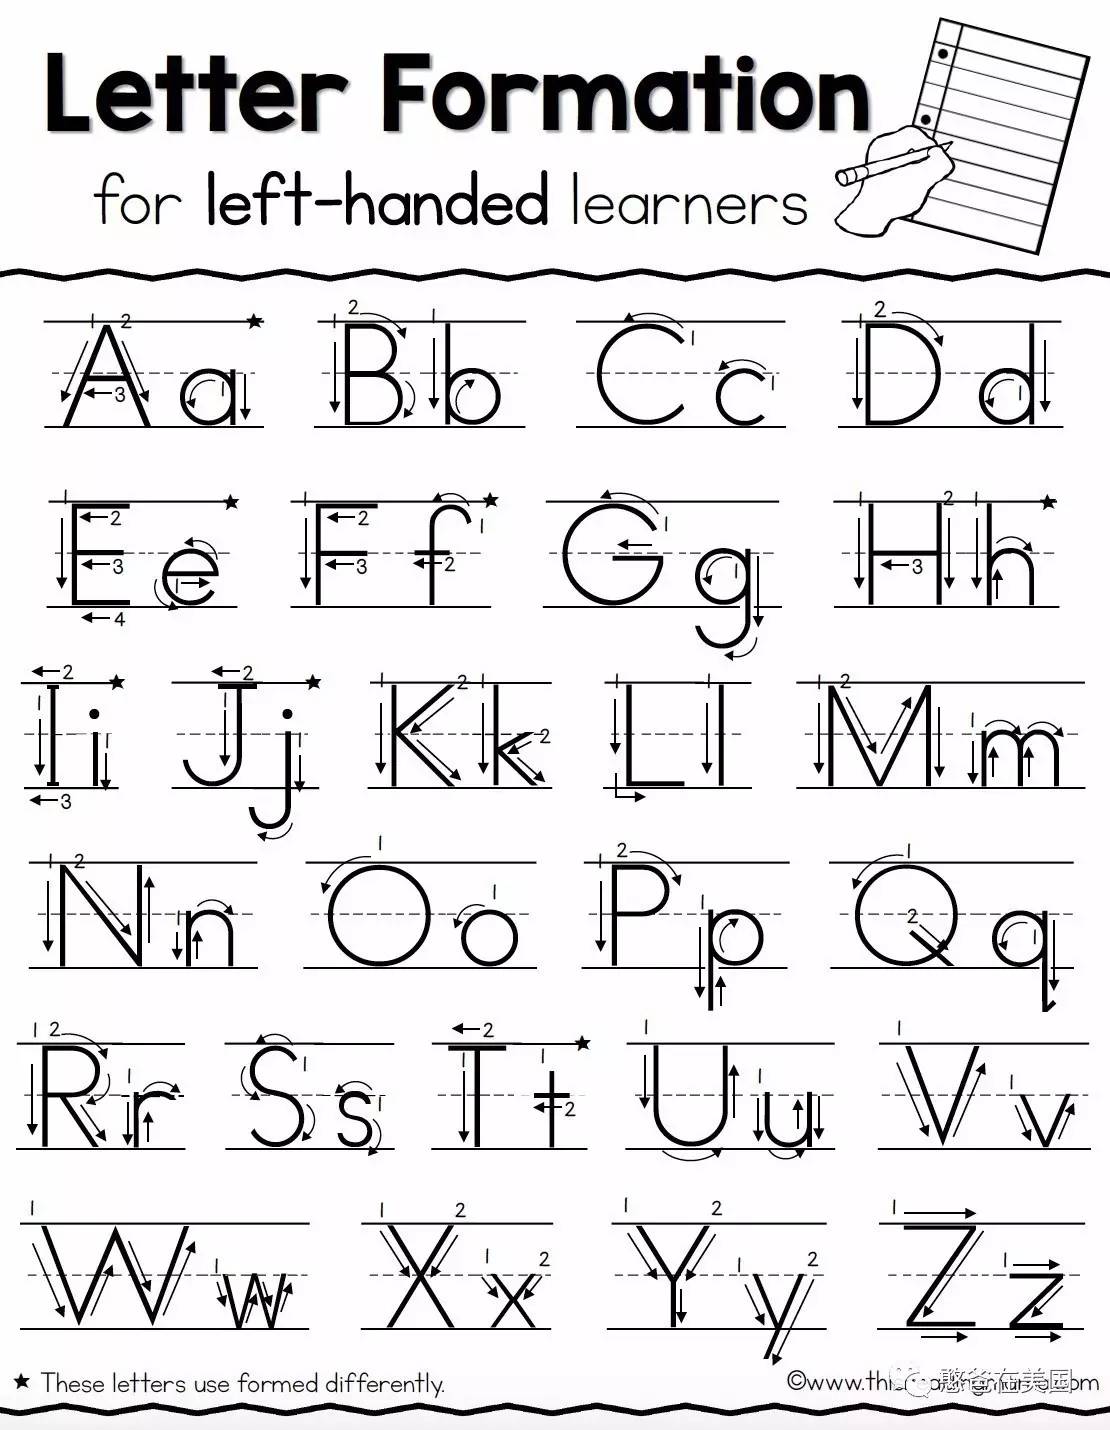 并没有一个左手字母练习册,而26个英文字母,算成大小写那就是52种字母